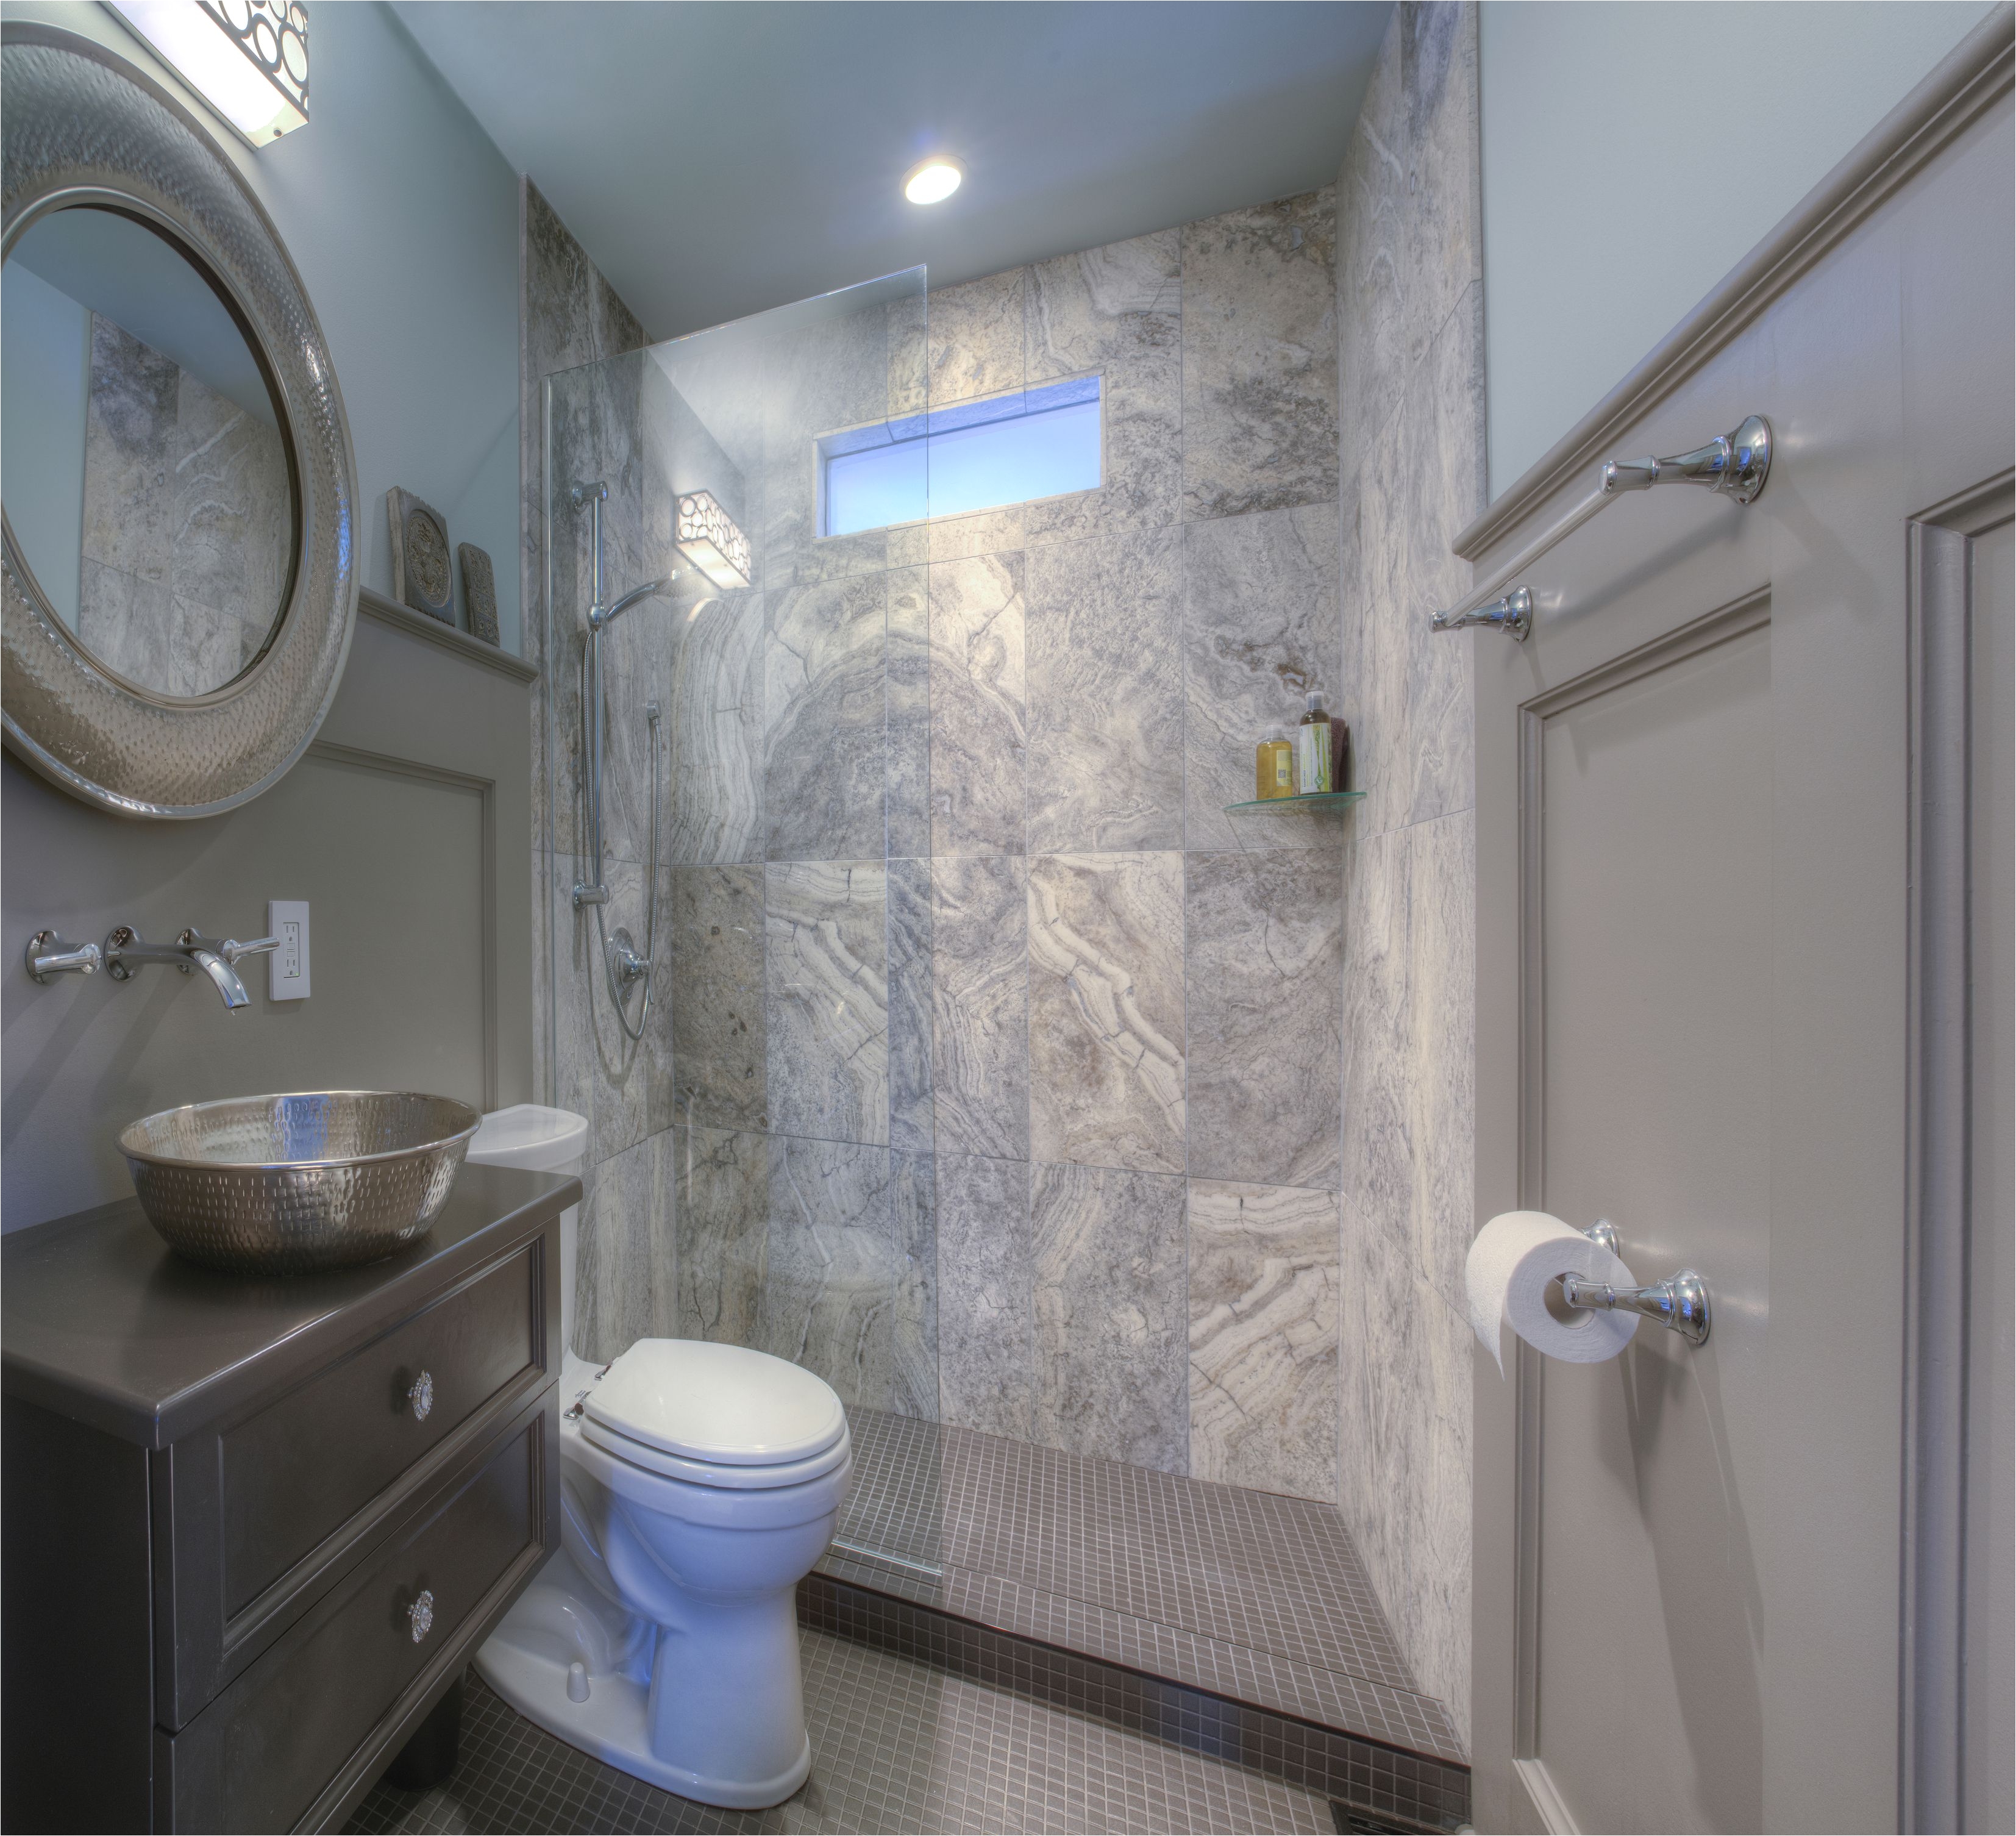 Bathroom Tile for Small Bathroom Design Ideas 25 Killer Small Bathroom Design Tips